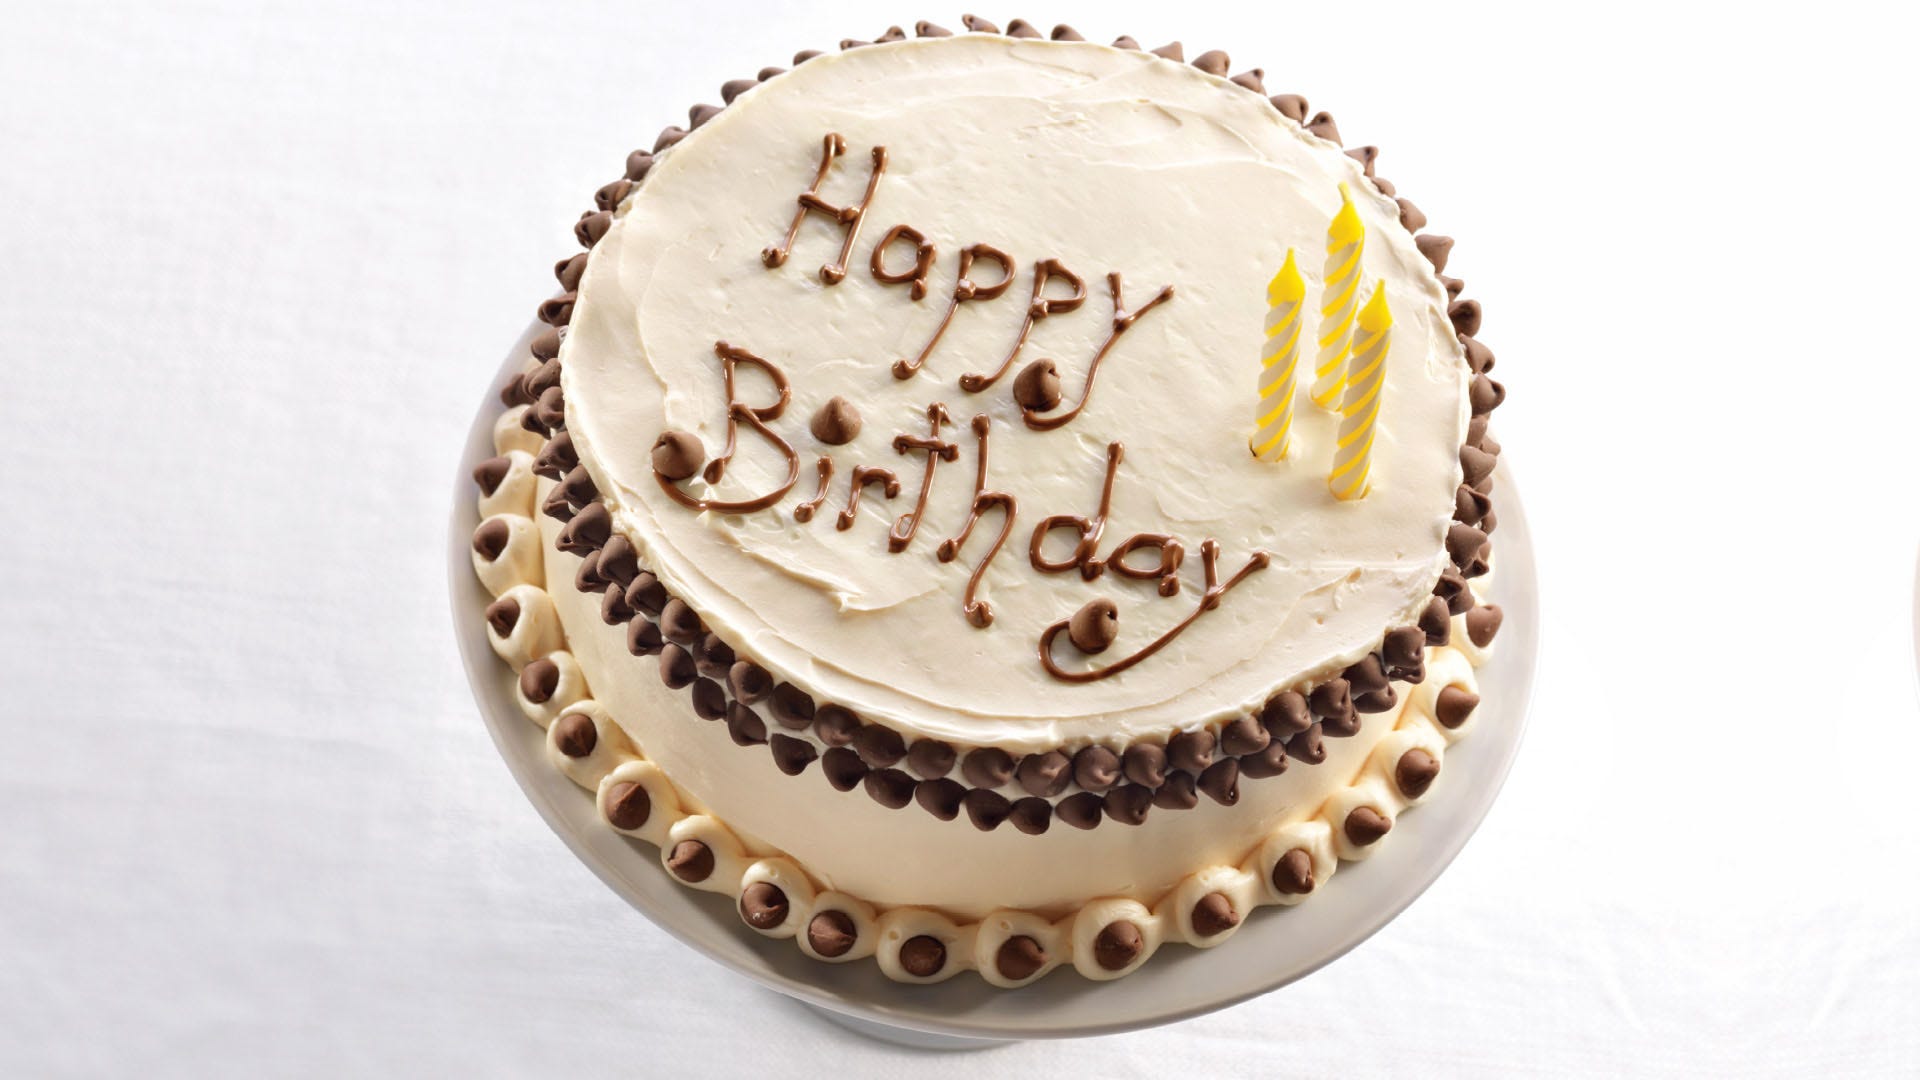 hersheys chipits signature birthday cake recipe